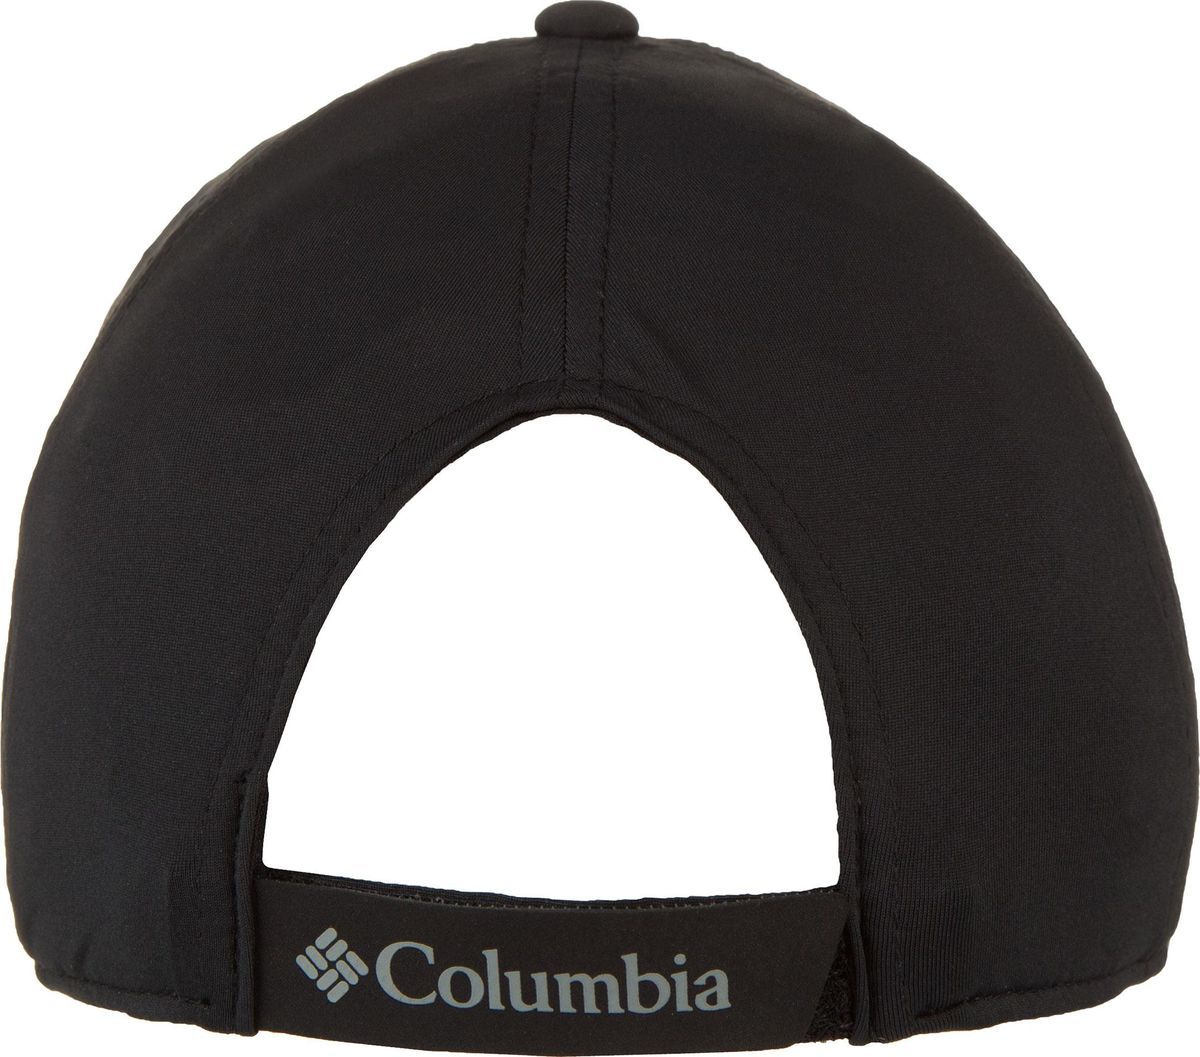  Columbia Adult cap, : . 1840001-010.  